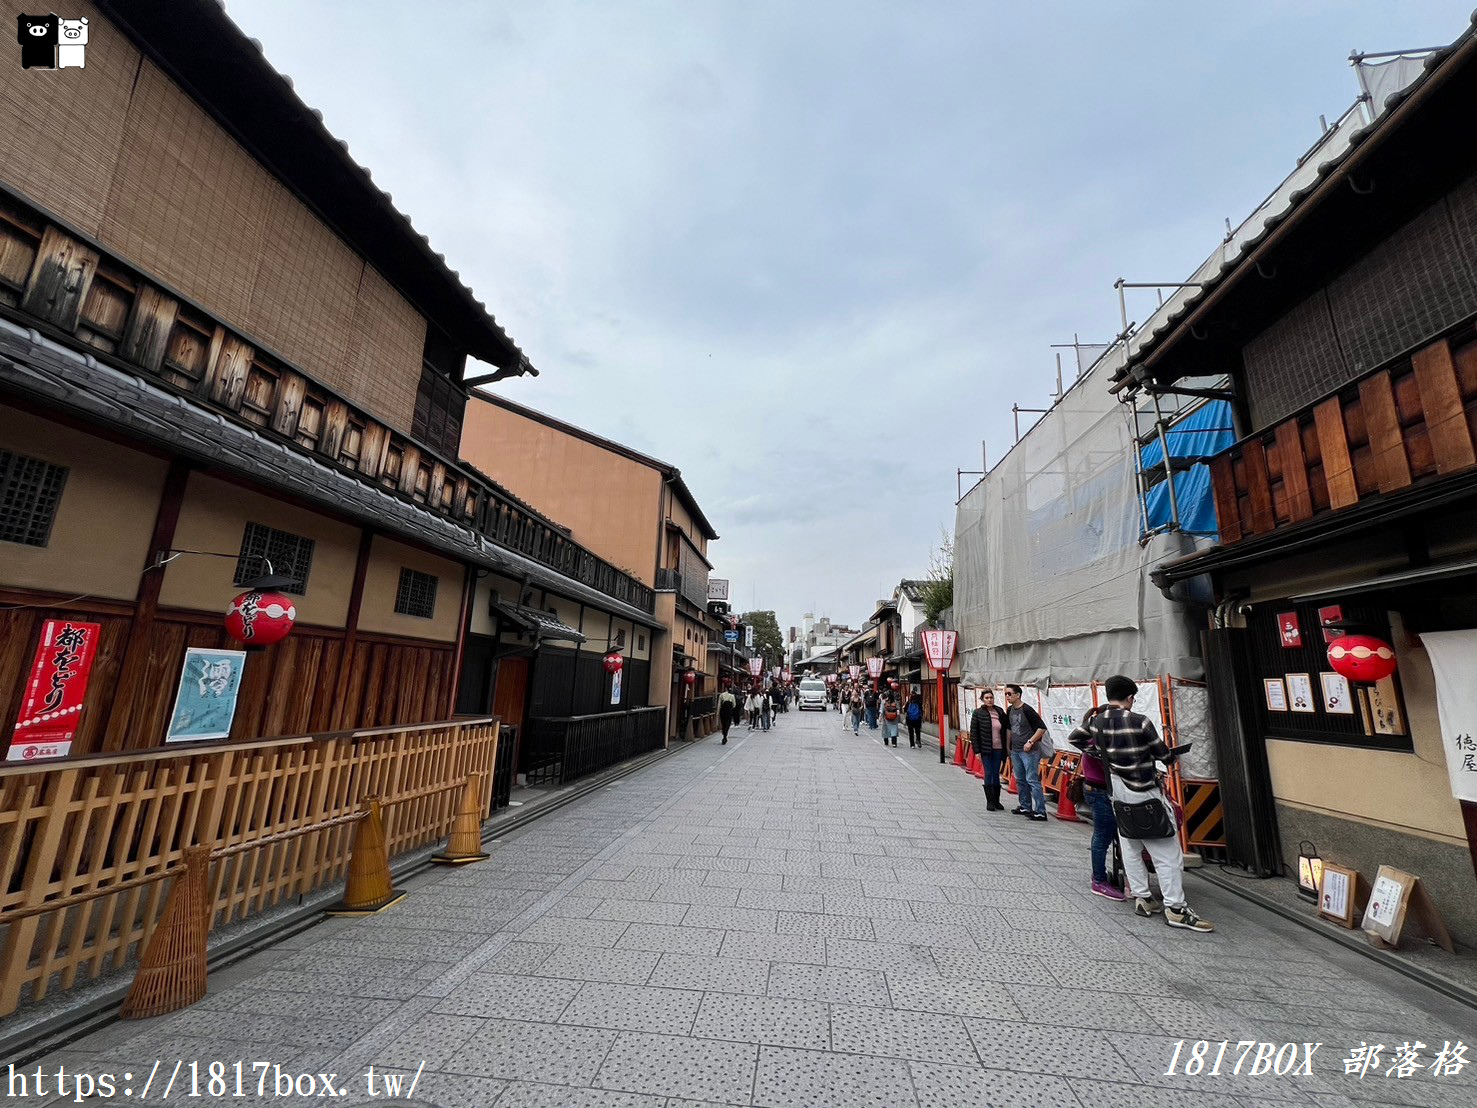 【京都景點】祇園花見小路。京都最受歡迎的一條街道。GION GOZU 四条店。品嚐限定版祇園祭櫻花布丁